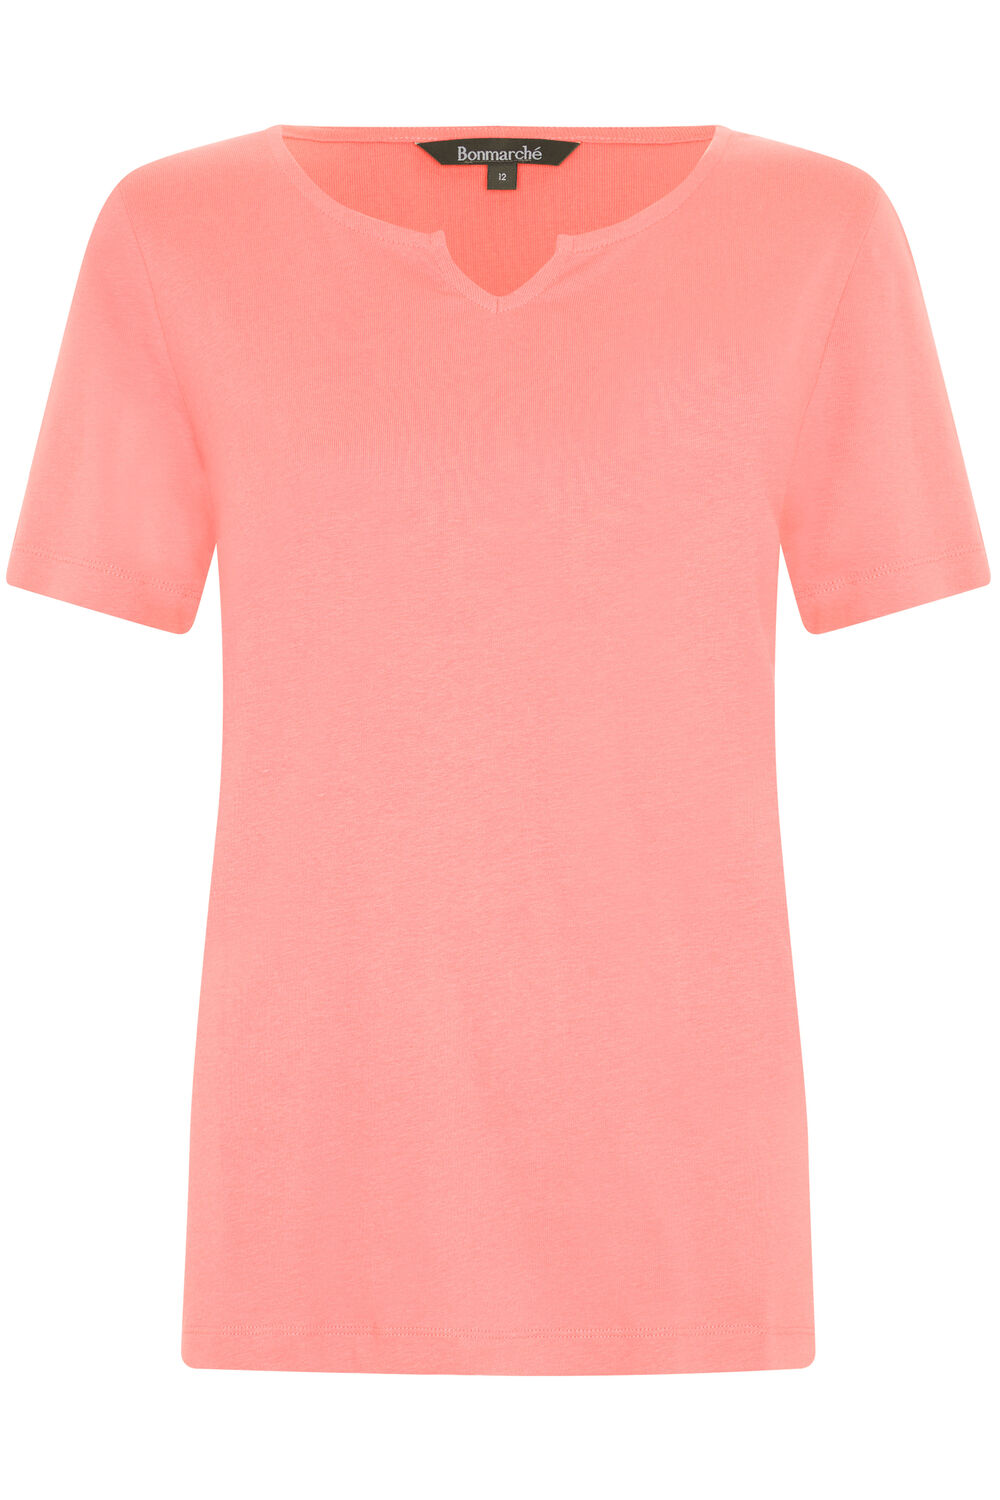 Bonmarche Coral Short Sleeve Plain Notch Neck T-Shirt, Size: 22